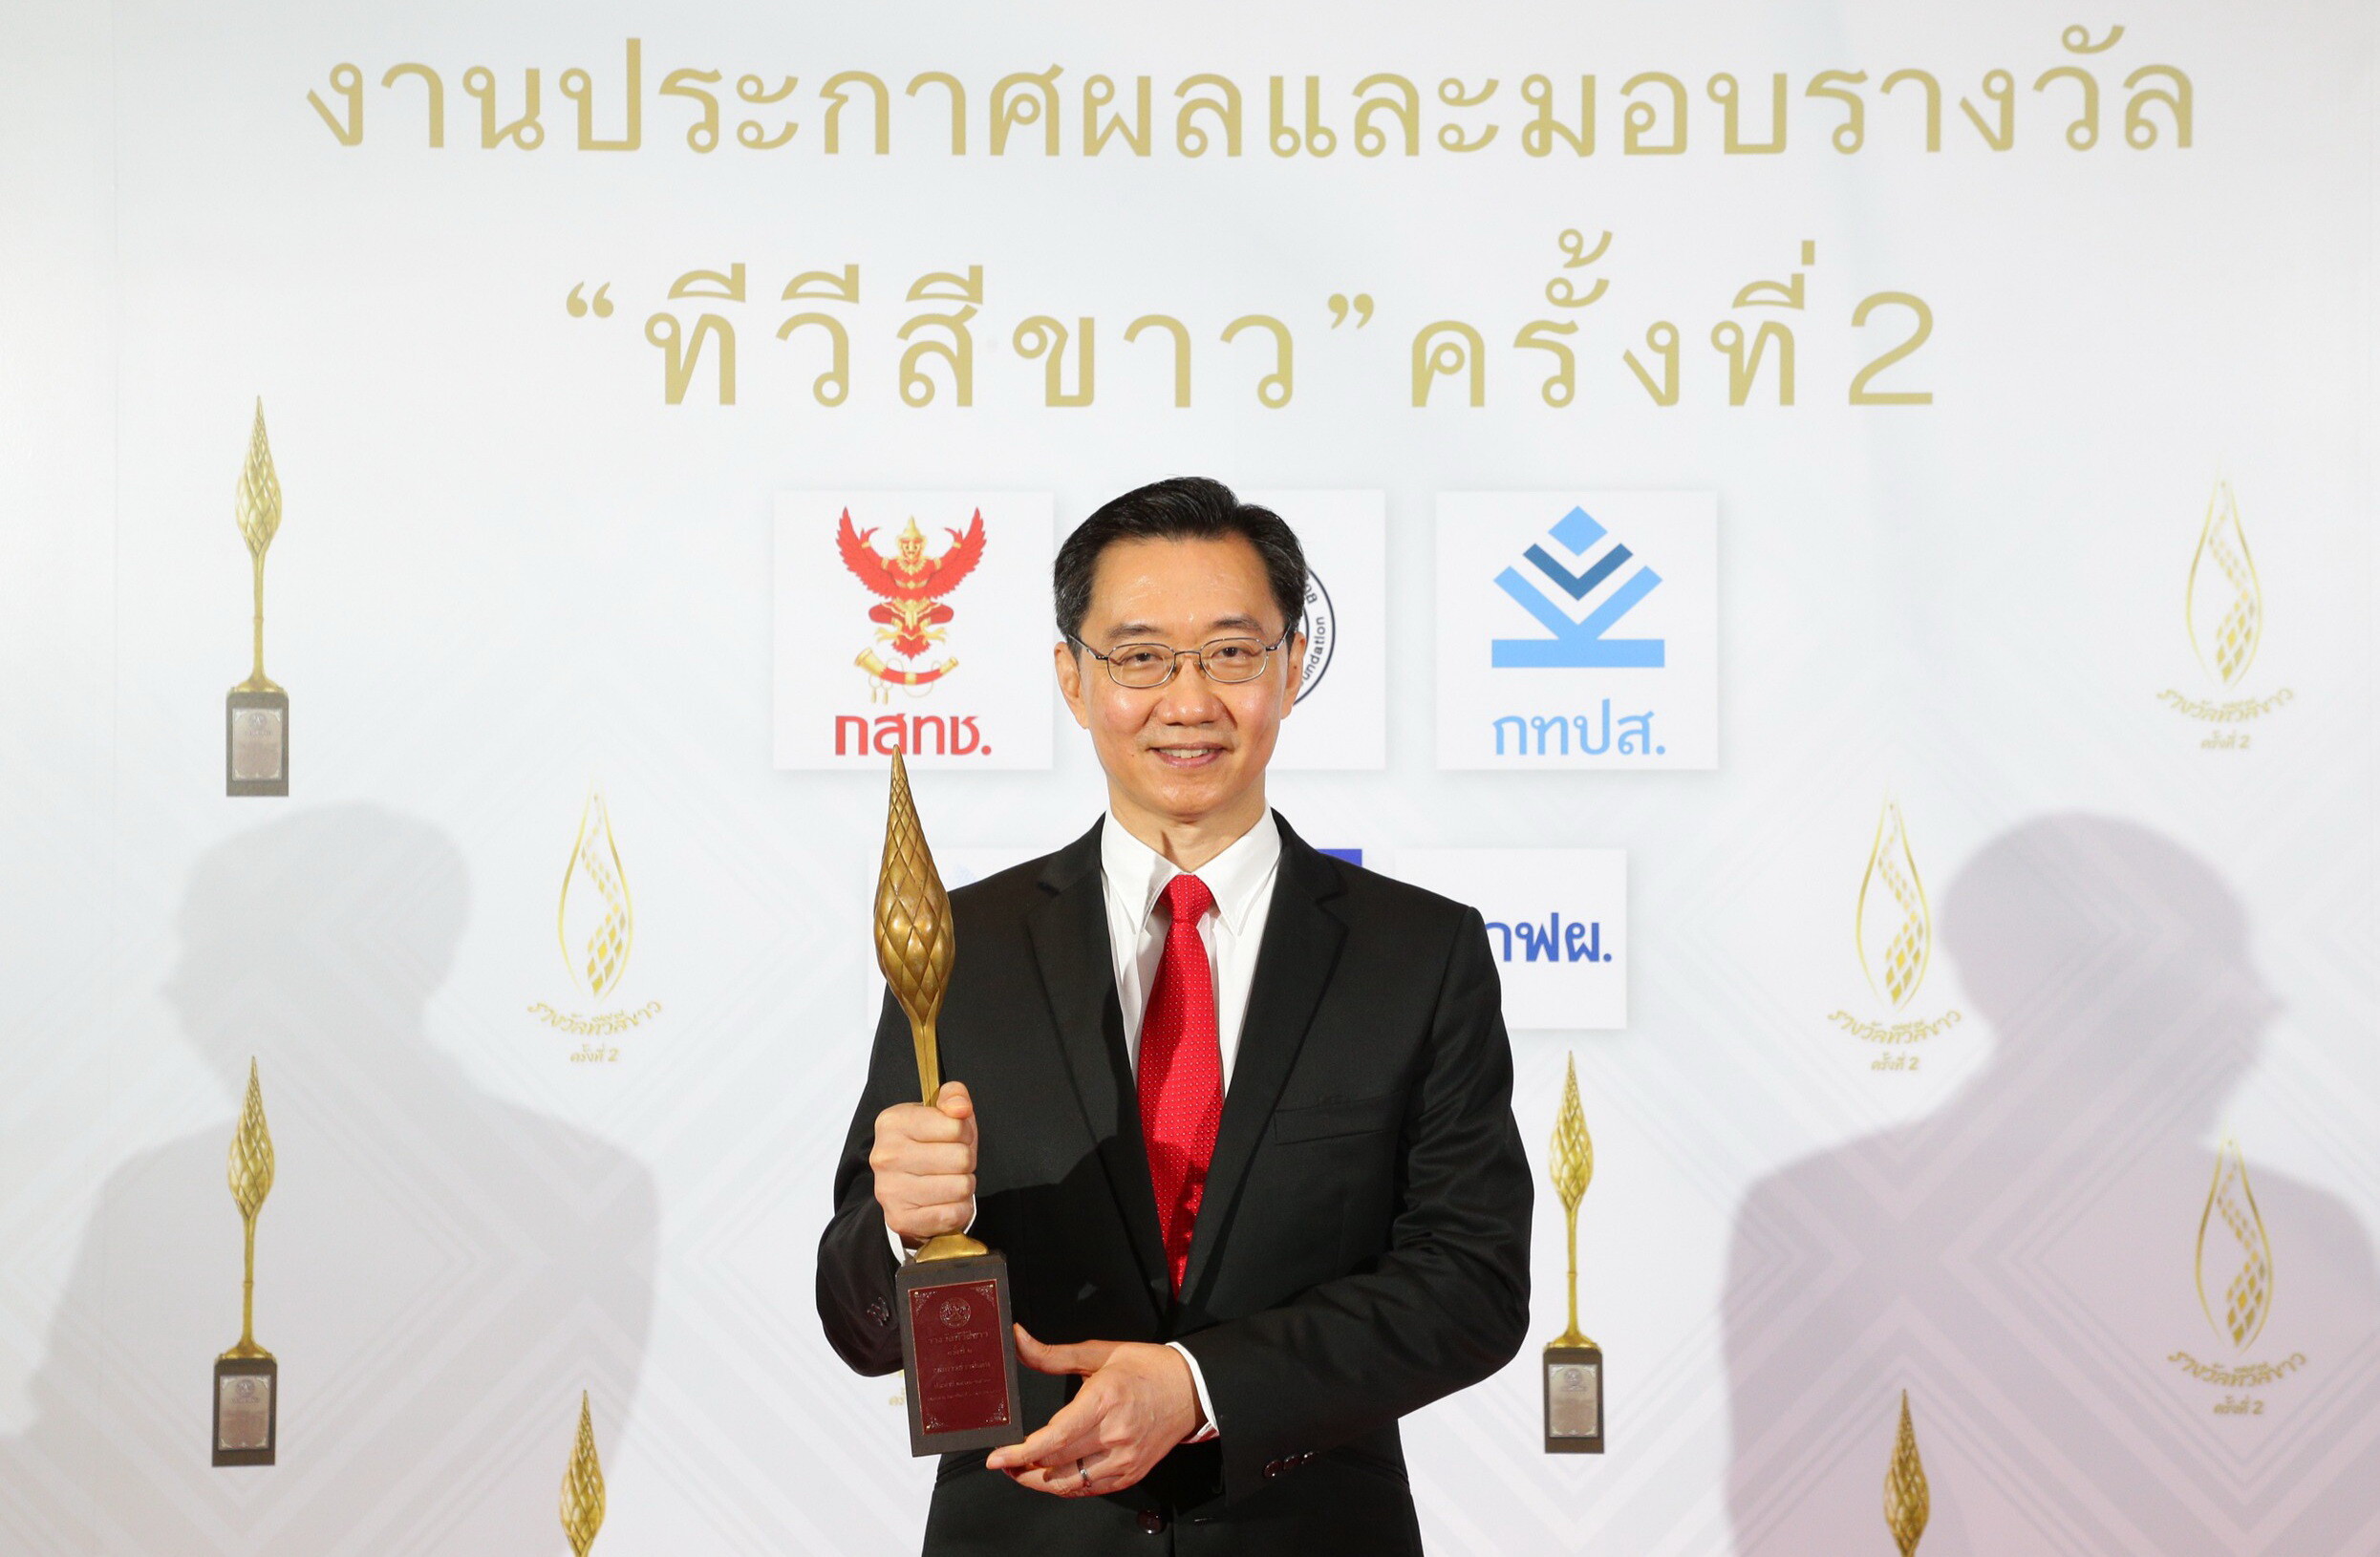 การันตีสถานีข่าวคุณภาพ...TNN ช่อง 16 คว้ารางวัล "รายการข่าวดีเด่น" งานประกาศผลทีวีสีขาว สะท้อนความมุ่งมั่น พัฒนาข่าวให้ทันโลก ทันเศรษฐกิจ ทันทุกความจริง เพื่อสังคมไทย